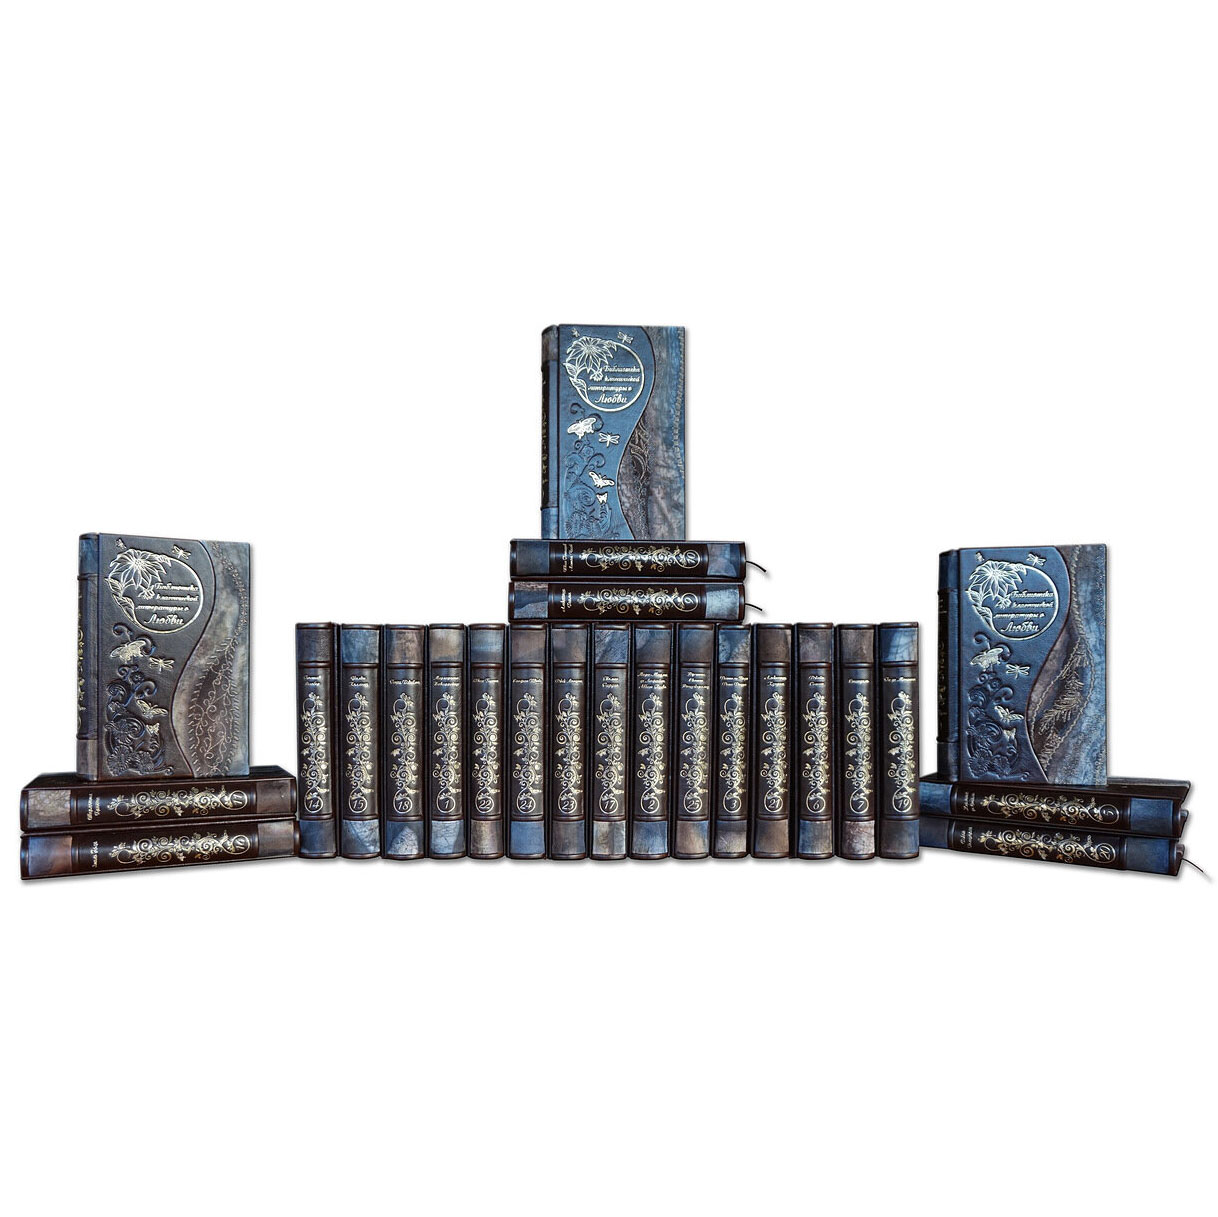 Подарочная библиотека классической литературы о любви в 25-ти томах - артикул: 505535 | Мосподарок 